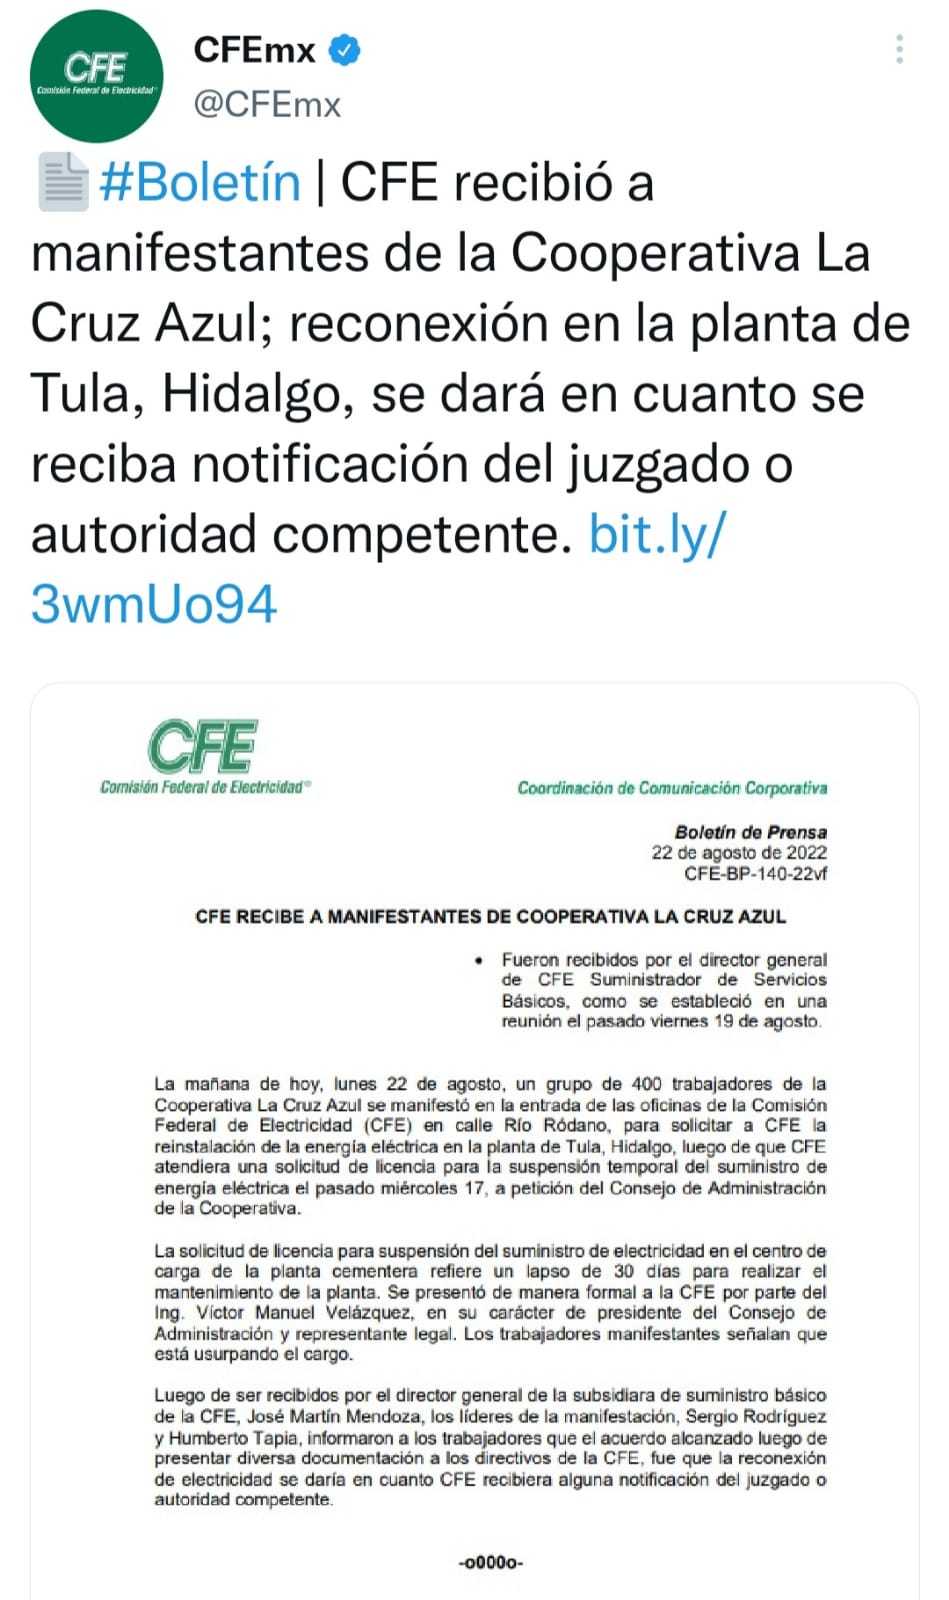 En apego a derecho, la acción realizada por la CFE en la planta secuestrada de la cooperativa Cruz Azul en Hidalgo